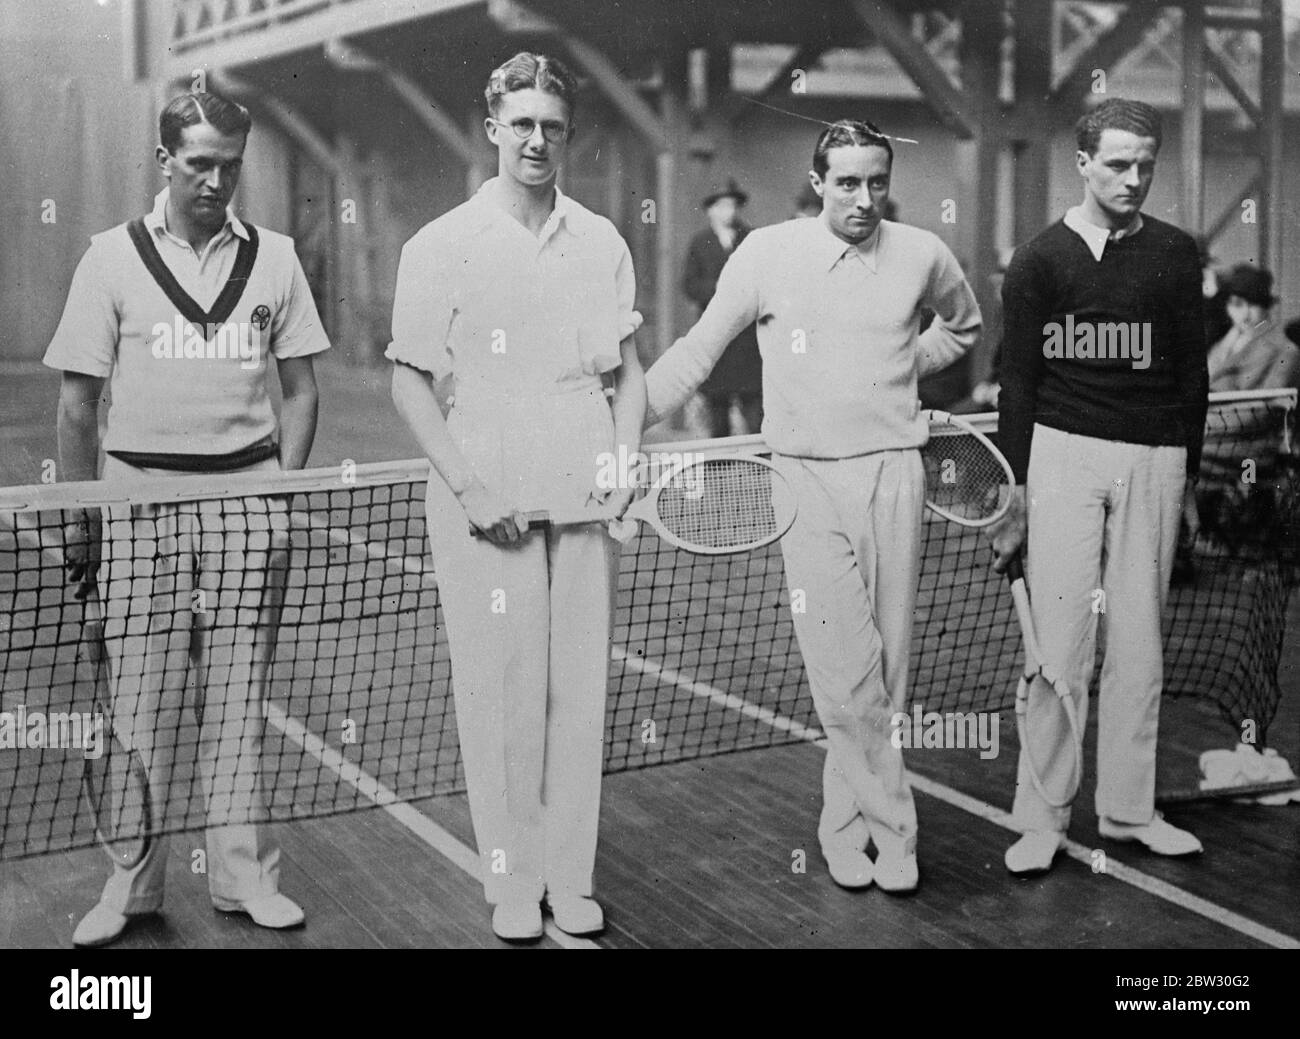 París partidos de tenis de Londres se abren en París. De izquierda a derecha H N Lee y H K Lester , de Inglaterra , P Peret y P Golschmidt de Francia , justo antes del inicio de su juego en el Club de Tenis de París en los torneos interurbanos de París versus Londres . 19 de marzo de 1932 . Foto de stock